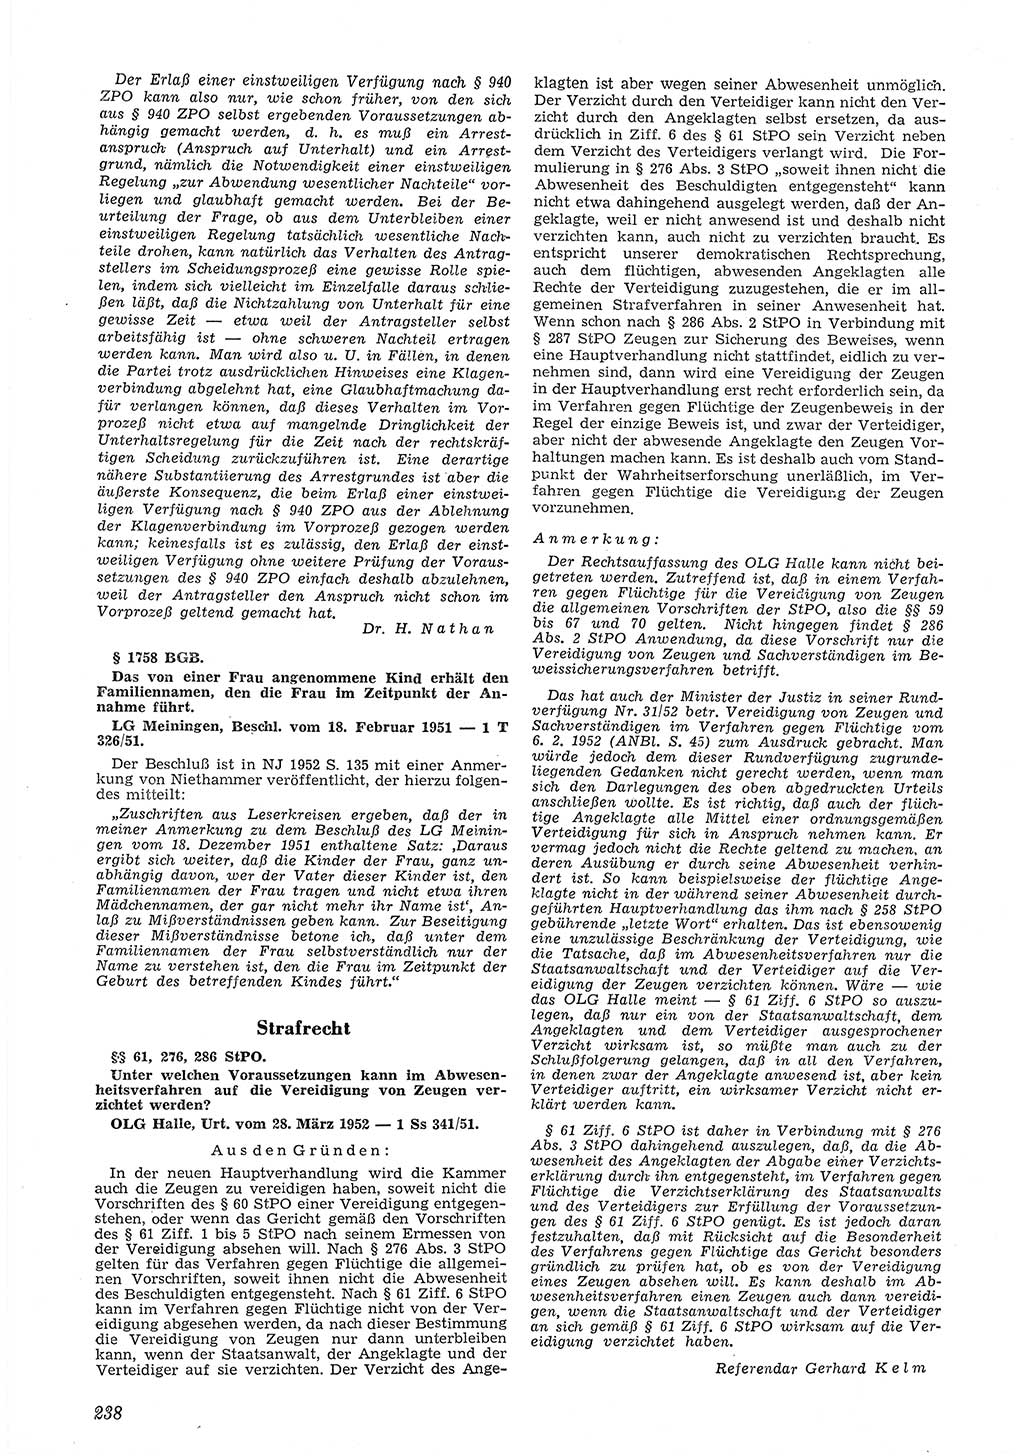 Neue Justiz (NJ), Zeitschrift für Recht und Rechtswissenschaft [Deutsche Demokratische Republik (DDR)], 6. Jahrgang 1952, Seite 238 (NJ DDR 1952, S. 238)